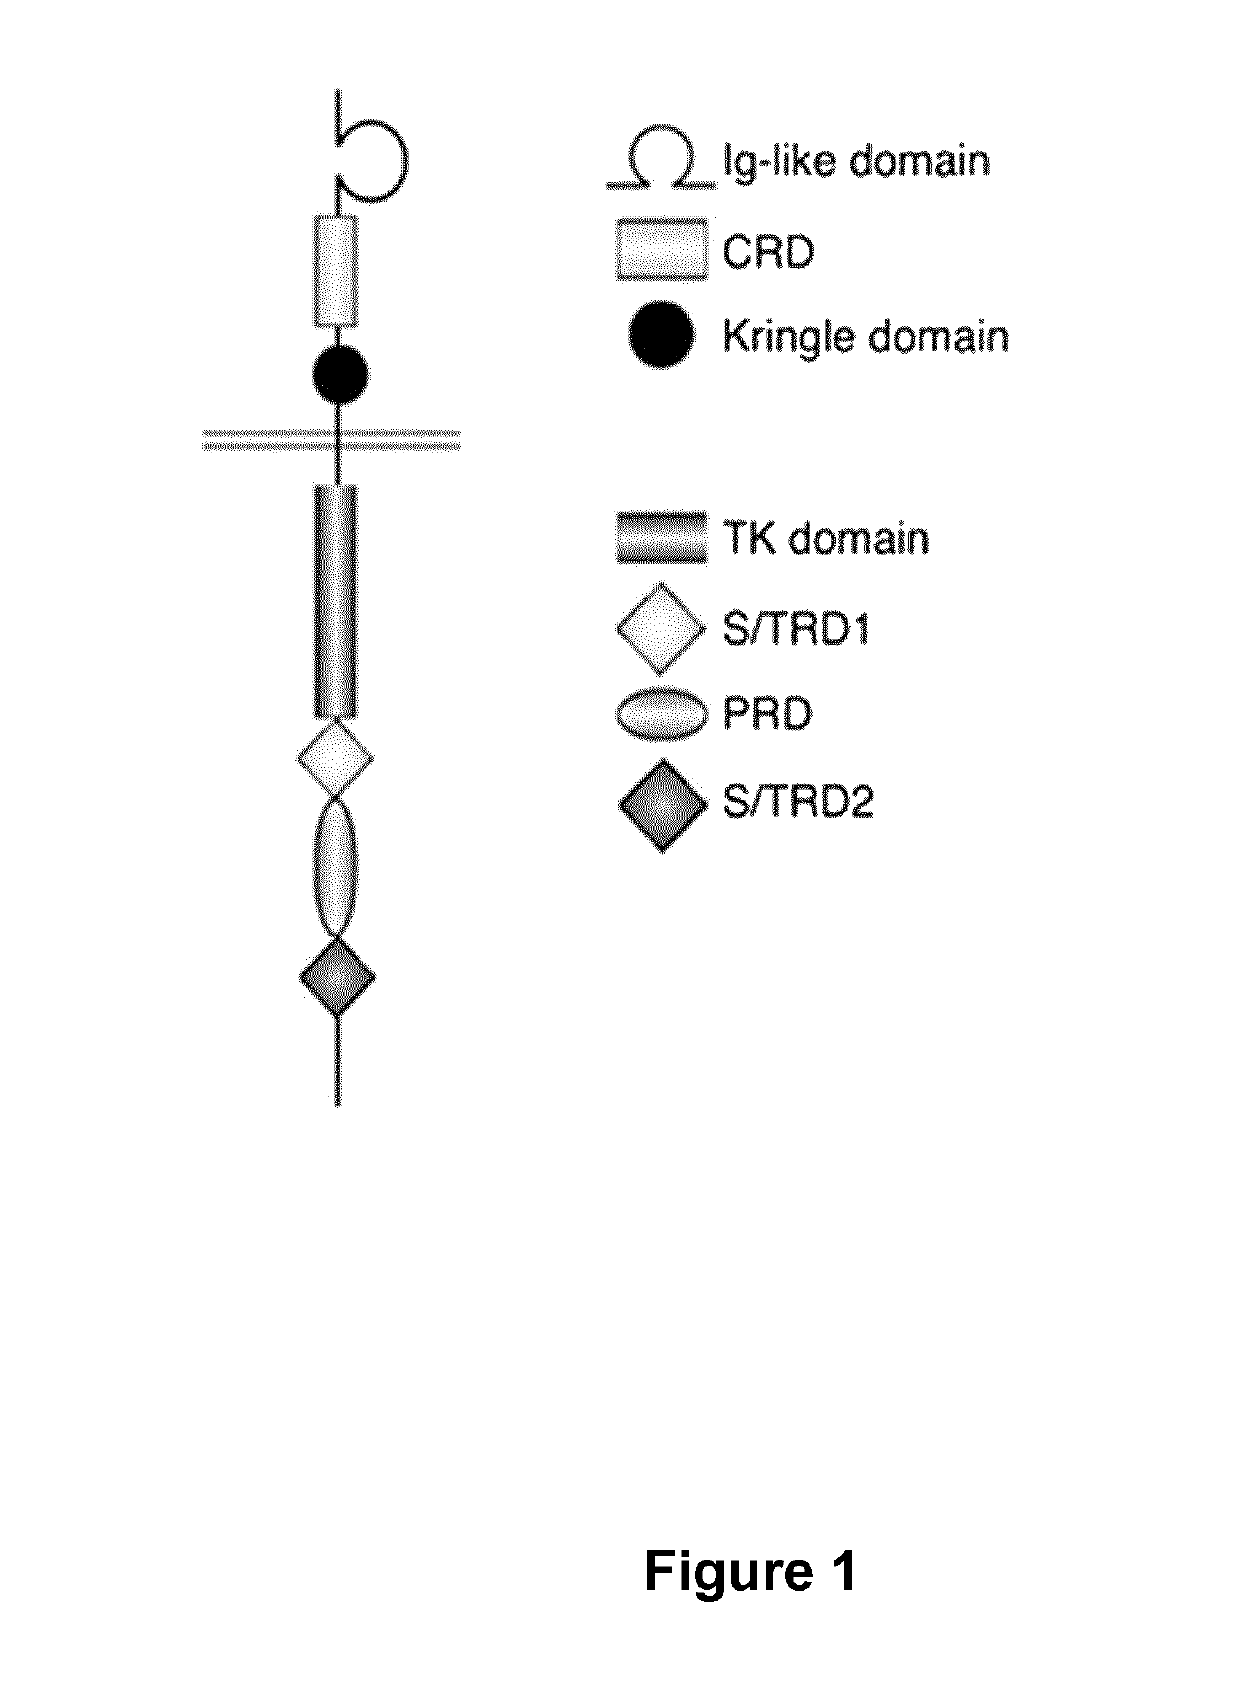 ROR1 specific multi-chain chimeric antigen receptor